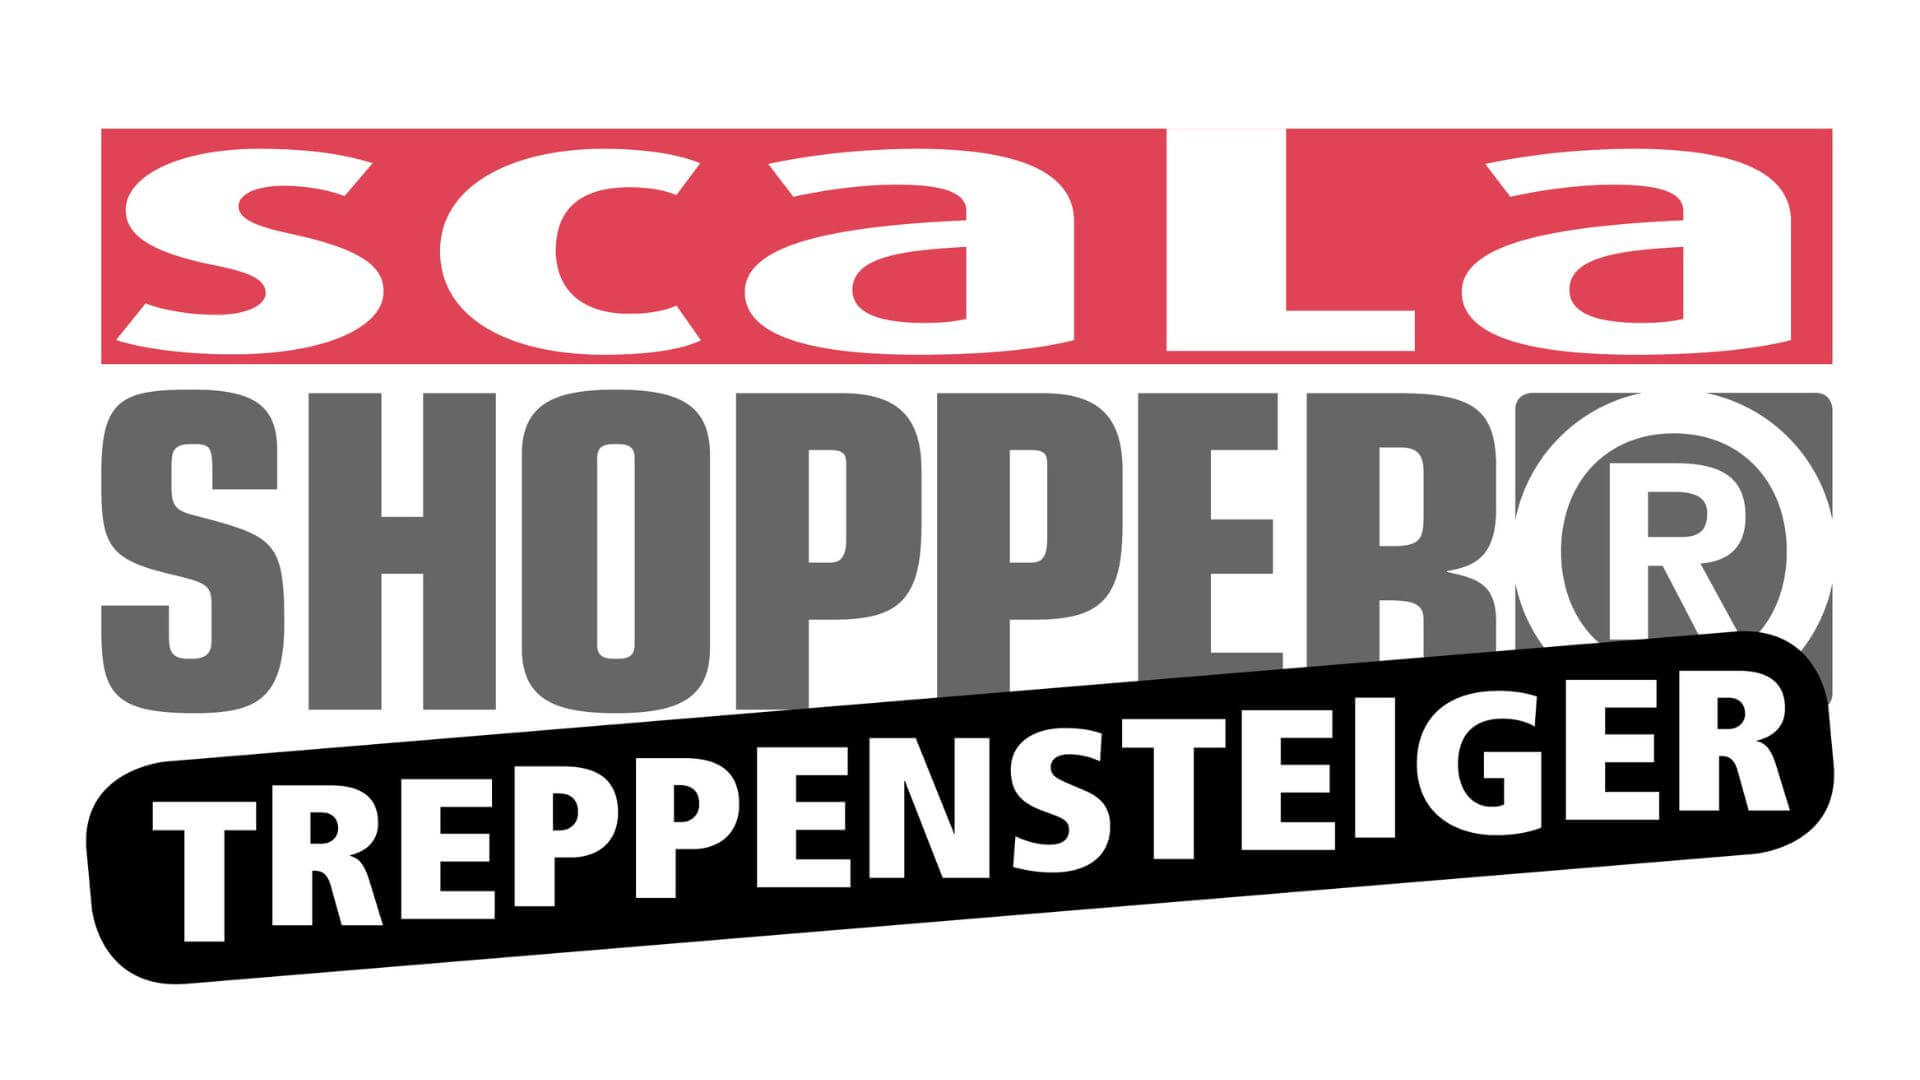 Load video: Film über den Andersen Treppensteiger Scala Shopper